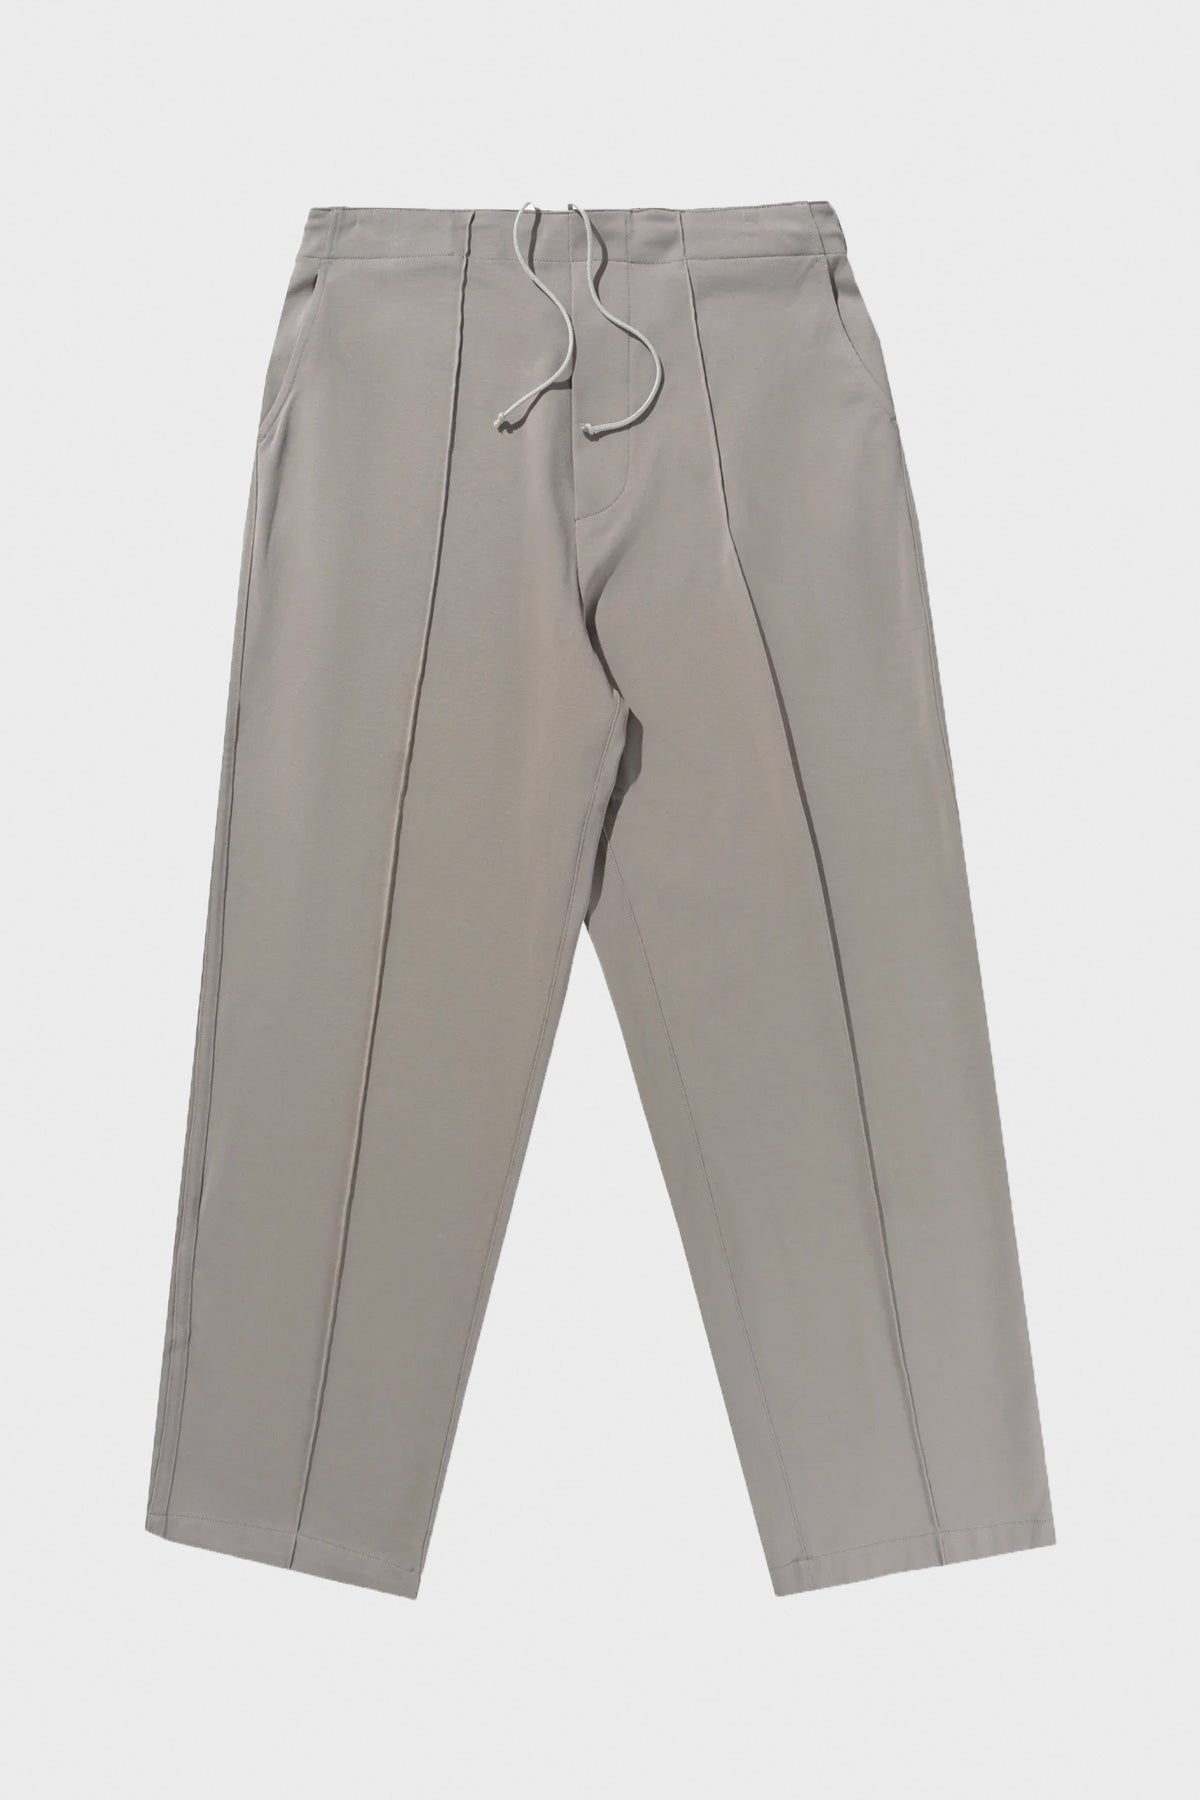 M's Granite Park Pants - Short – Patagonia Worn Wear